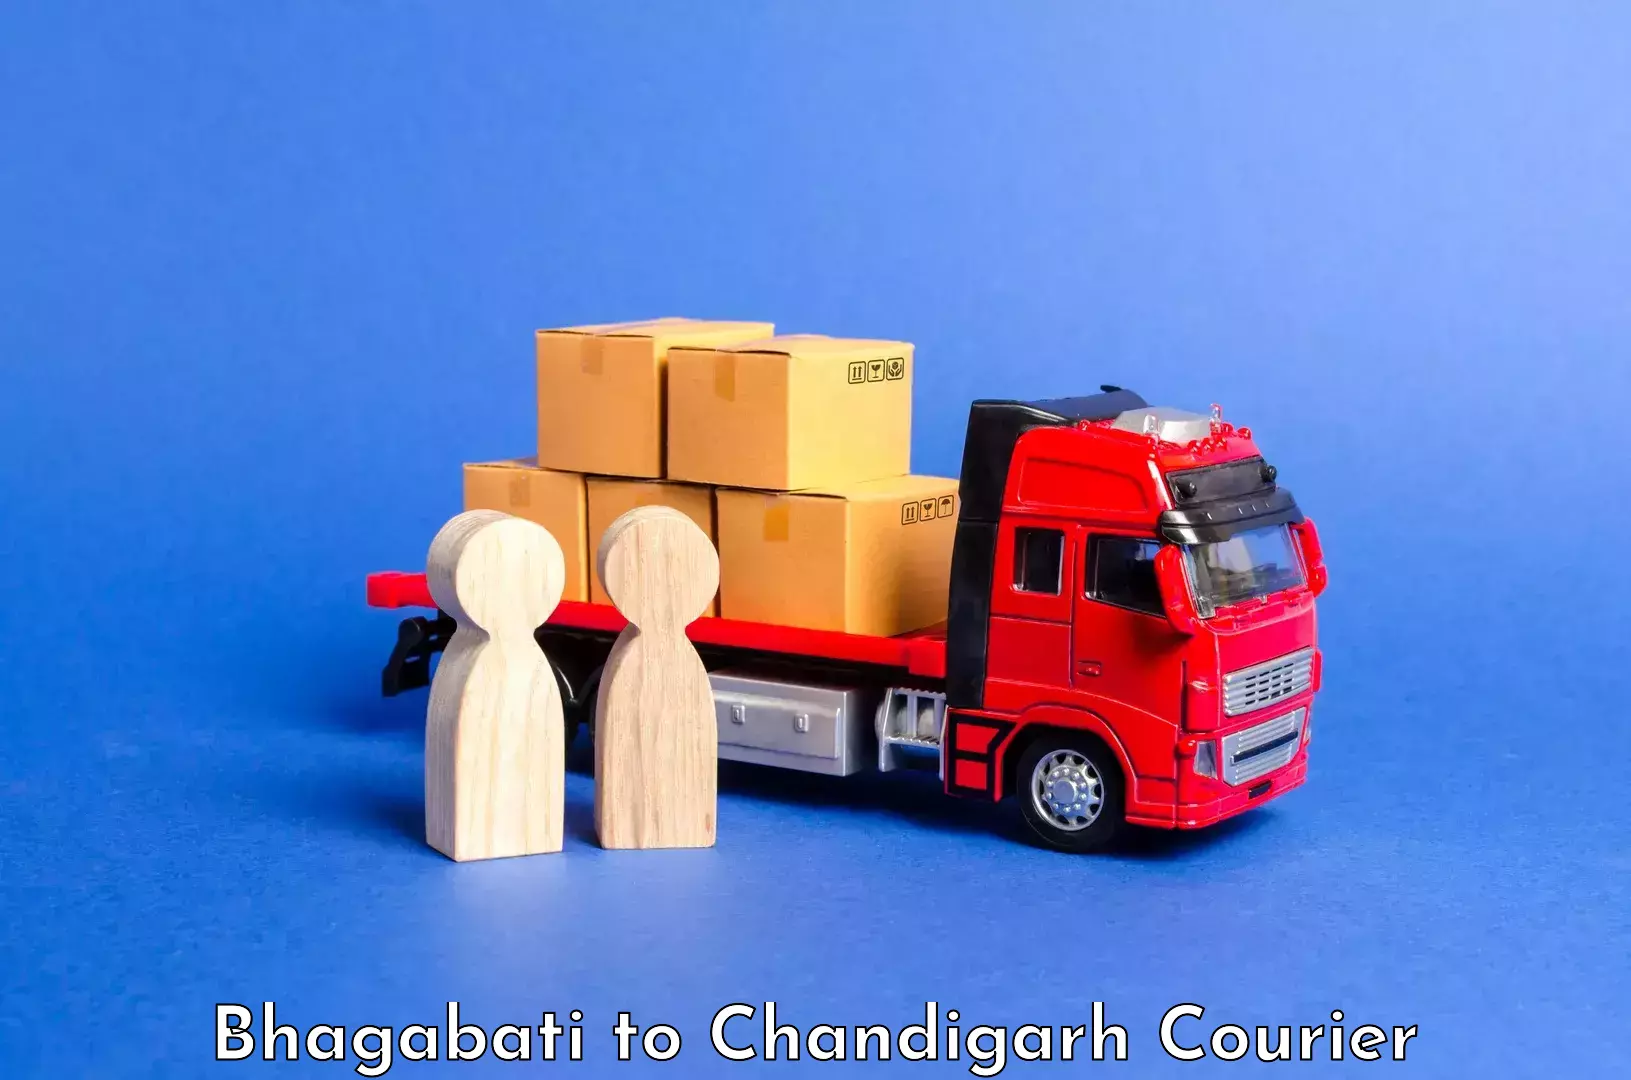 Overnight luggage courier Bhagabati to Chandigarh